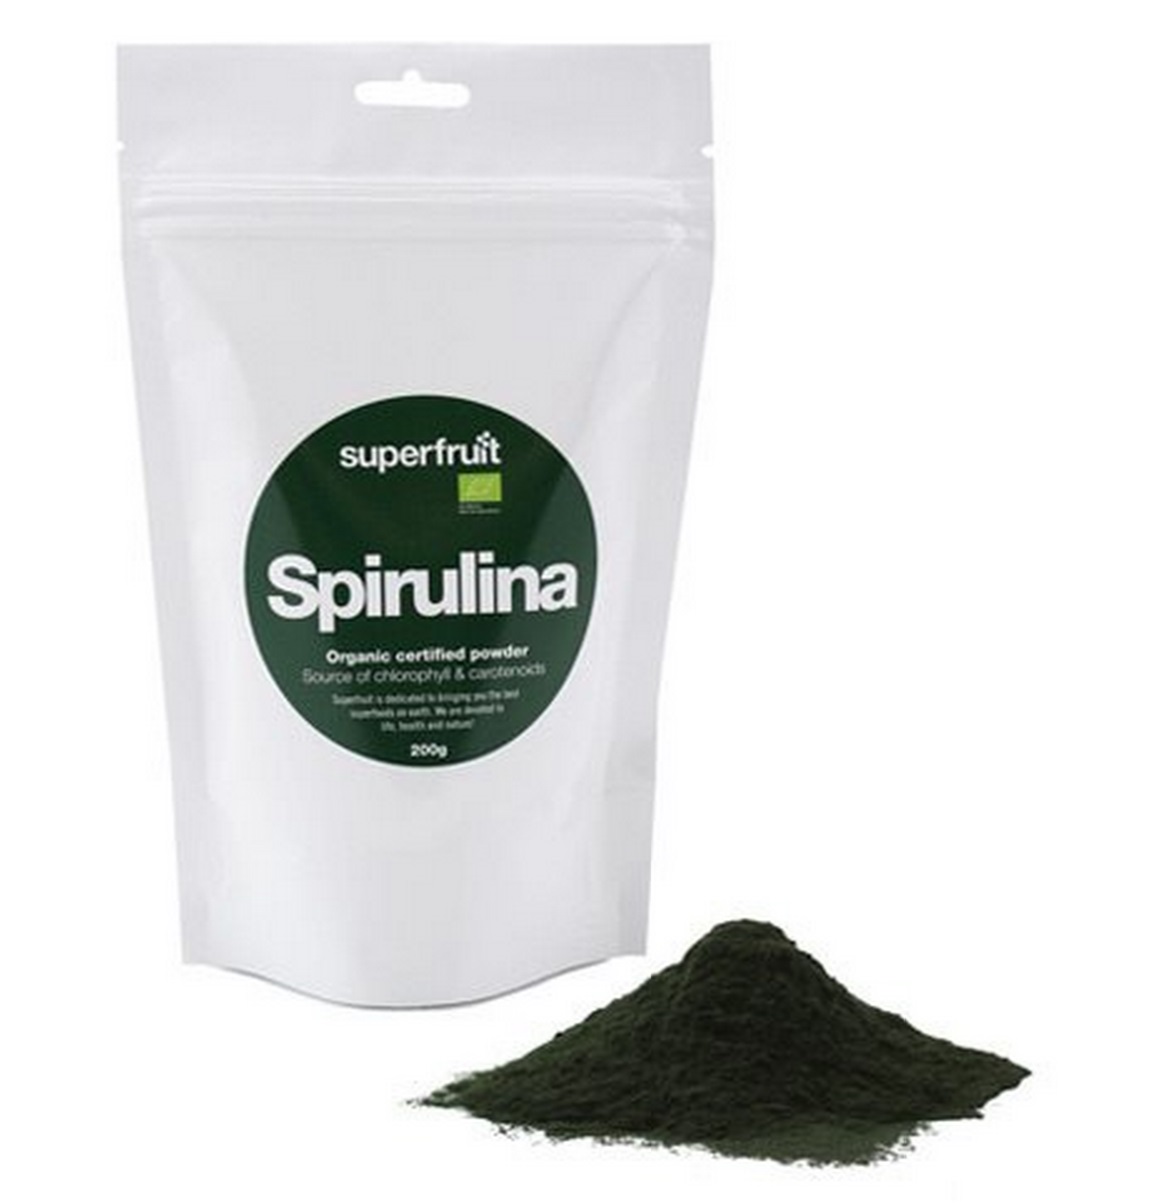 Billede af Spirulina pulver Ø Superfruit, 200g.